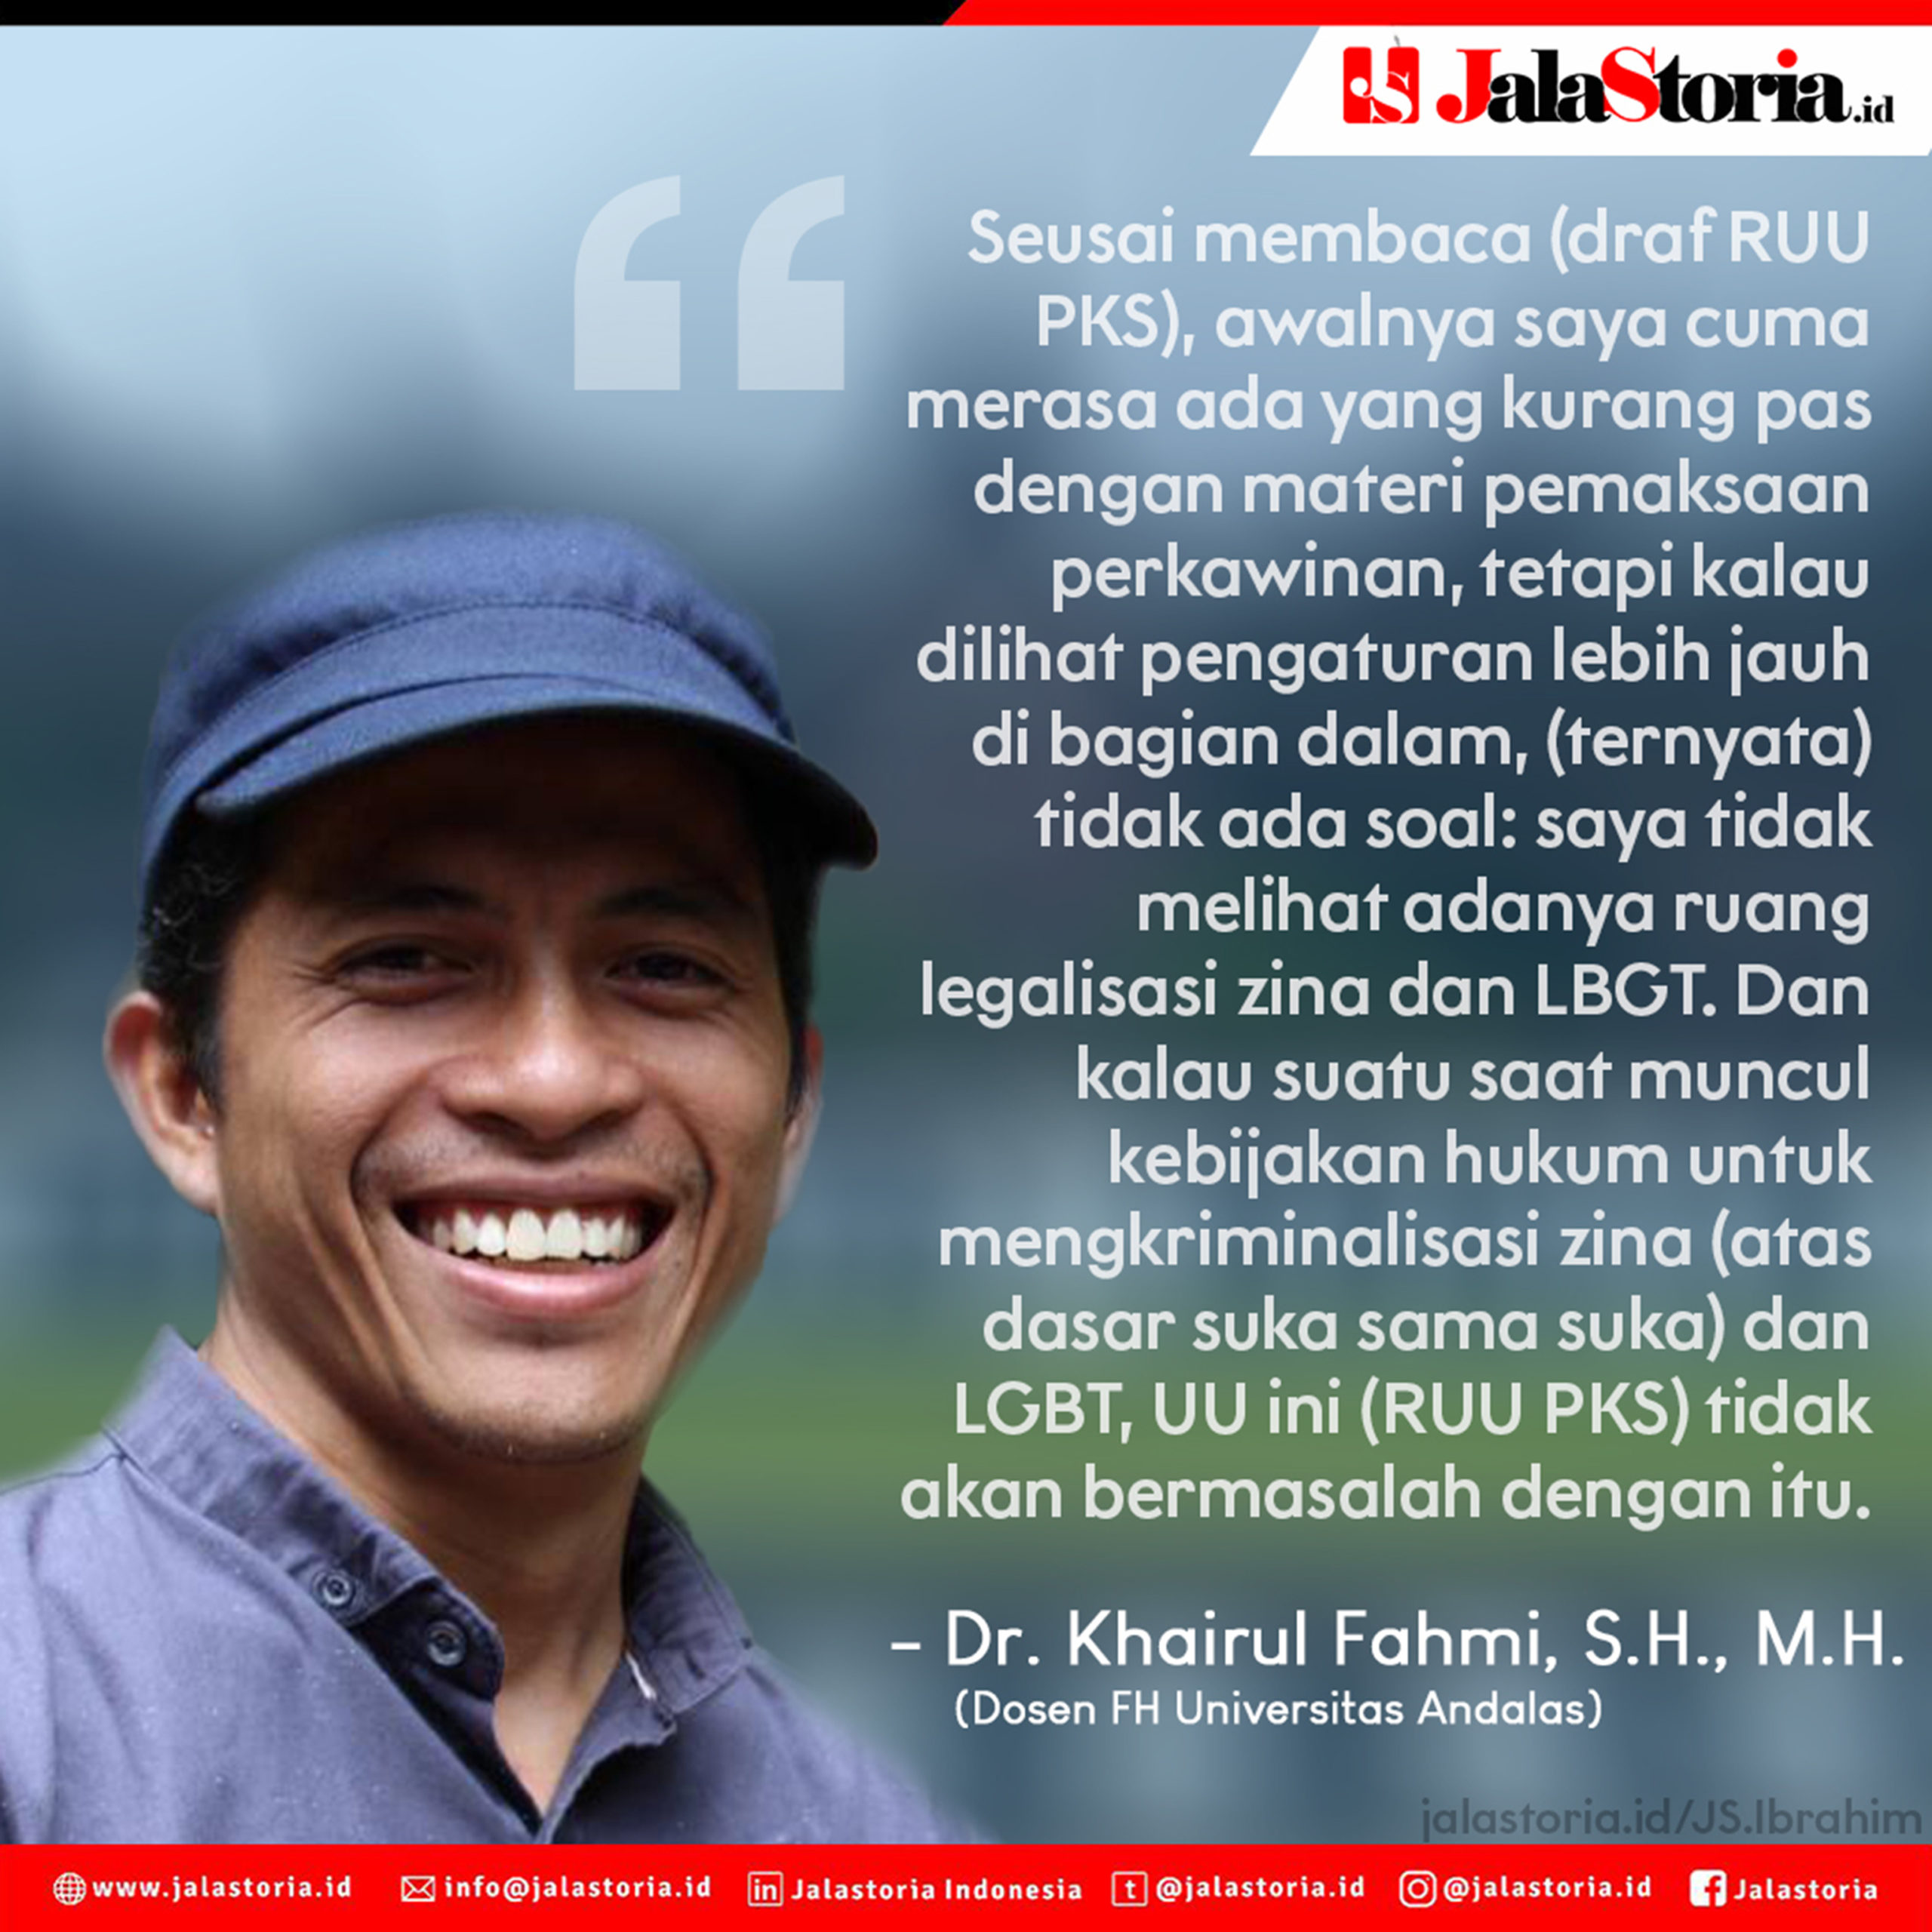 Dr. Khairul RUU PKS Tidak Legalkan Zina